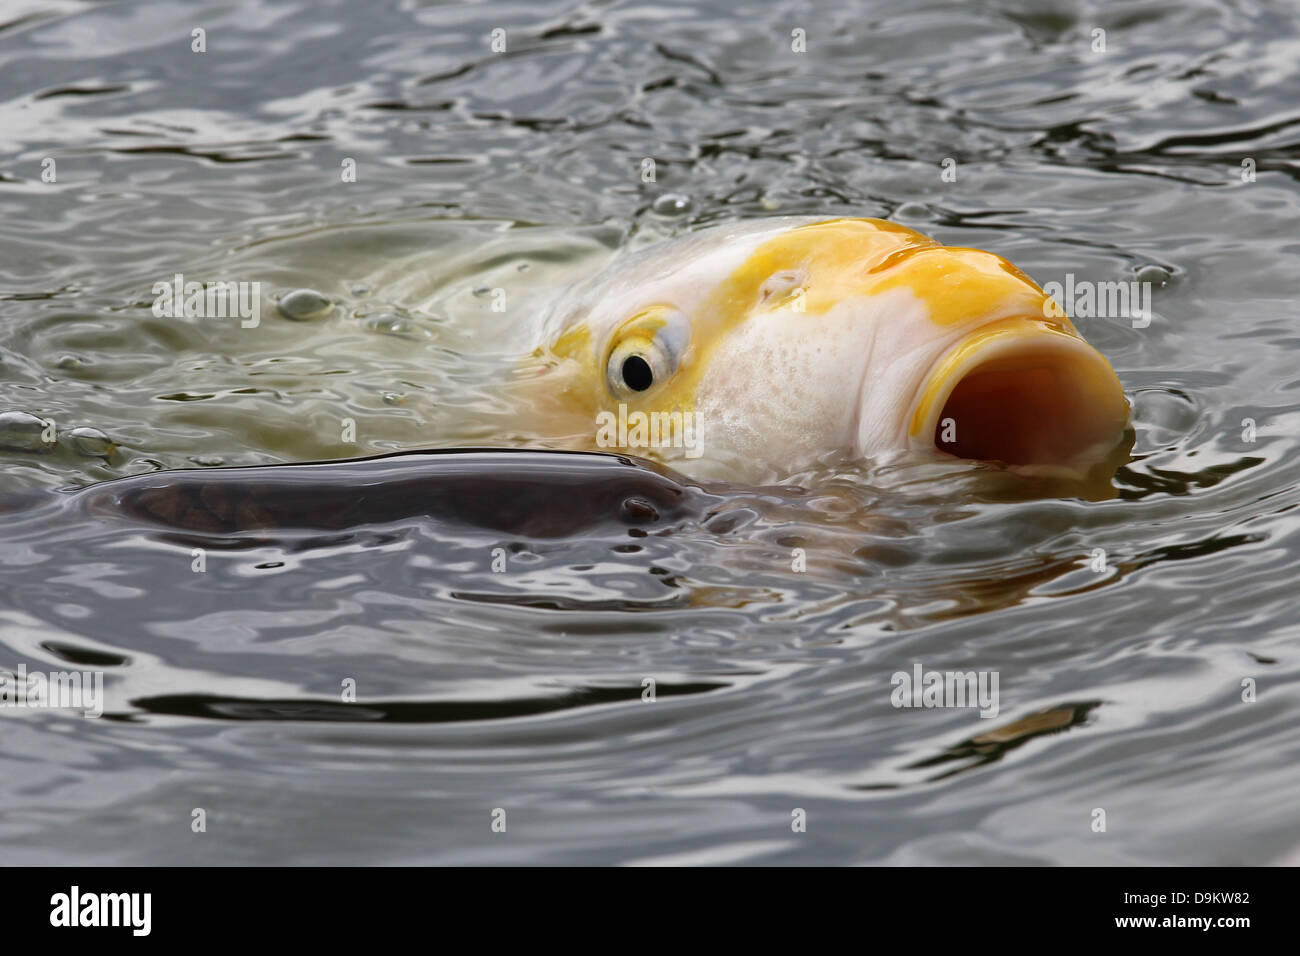 Carpa dorata pesce che nuota con la testa fuori acqua nel lago, la bocca  aperta e visibile agli occhi Foto stock - Alamy